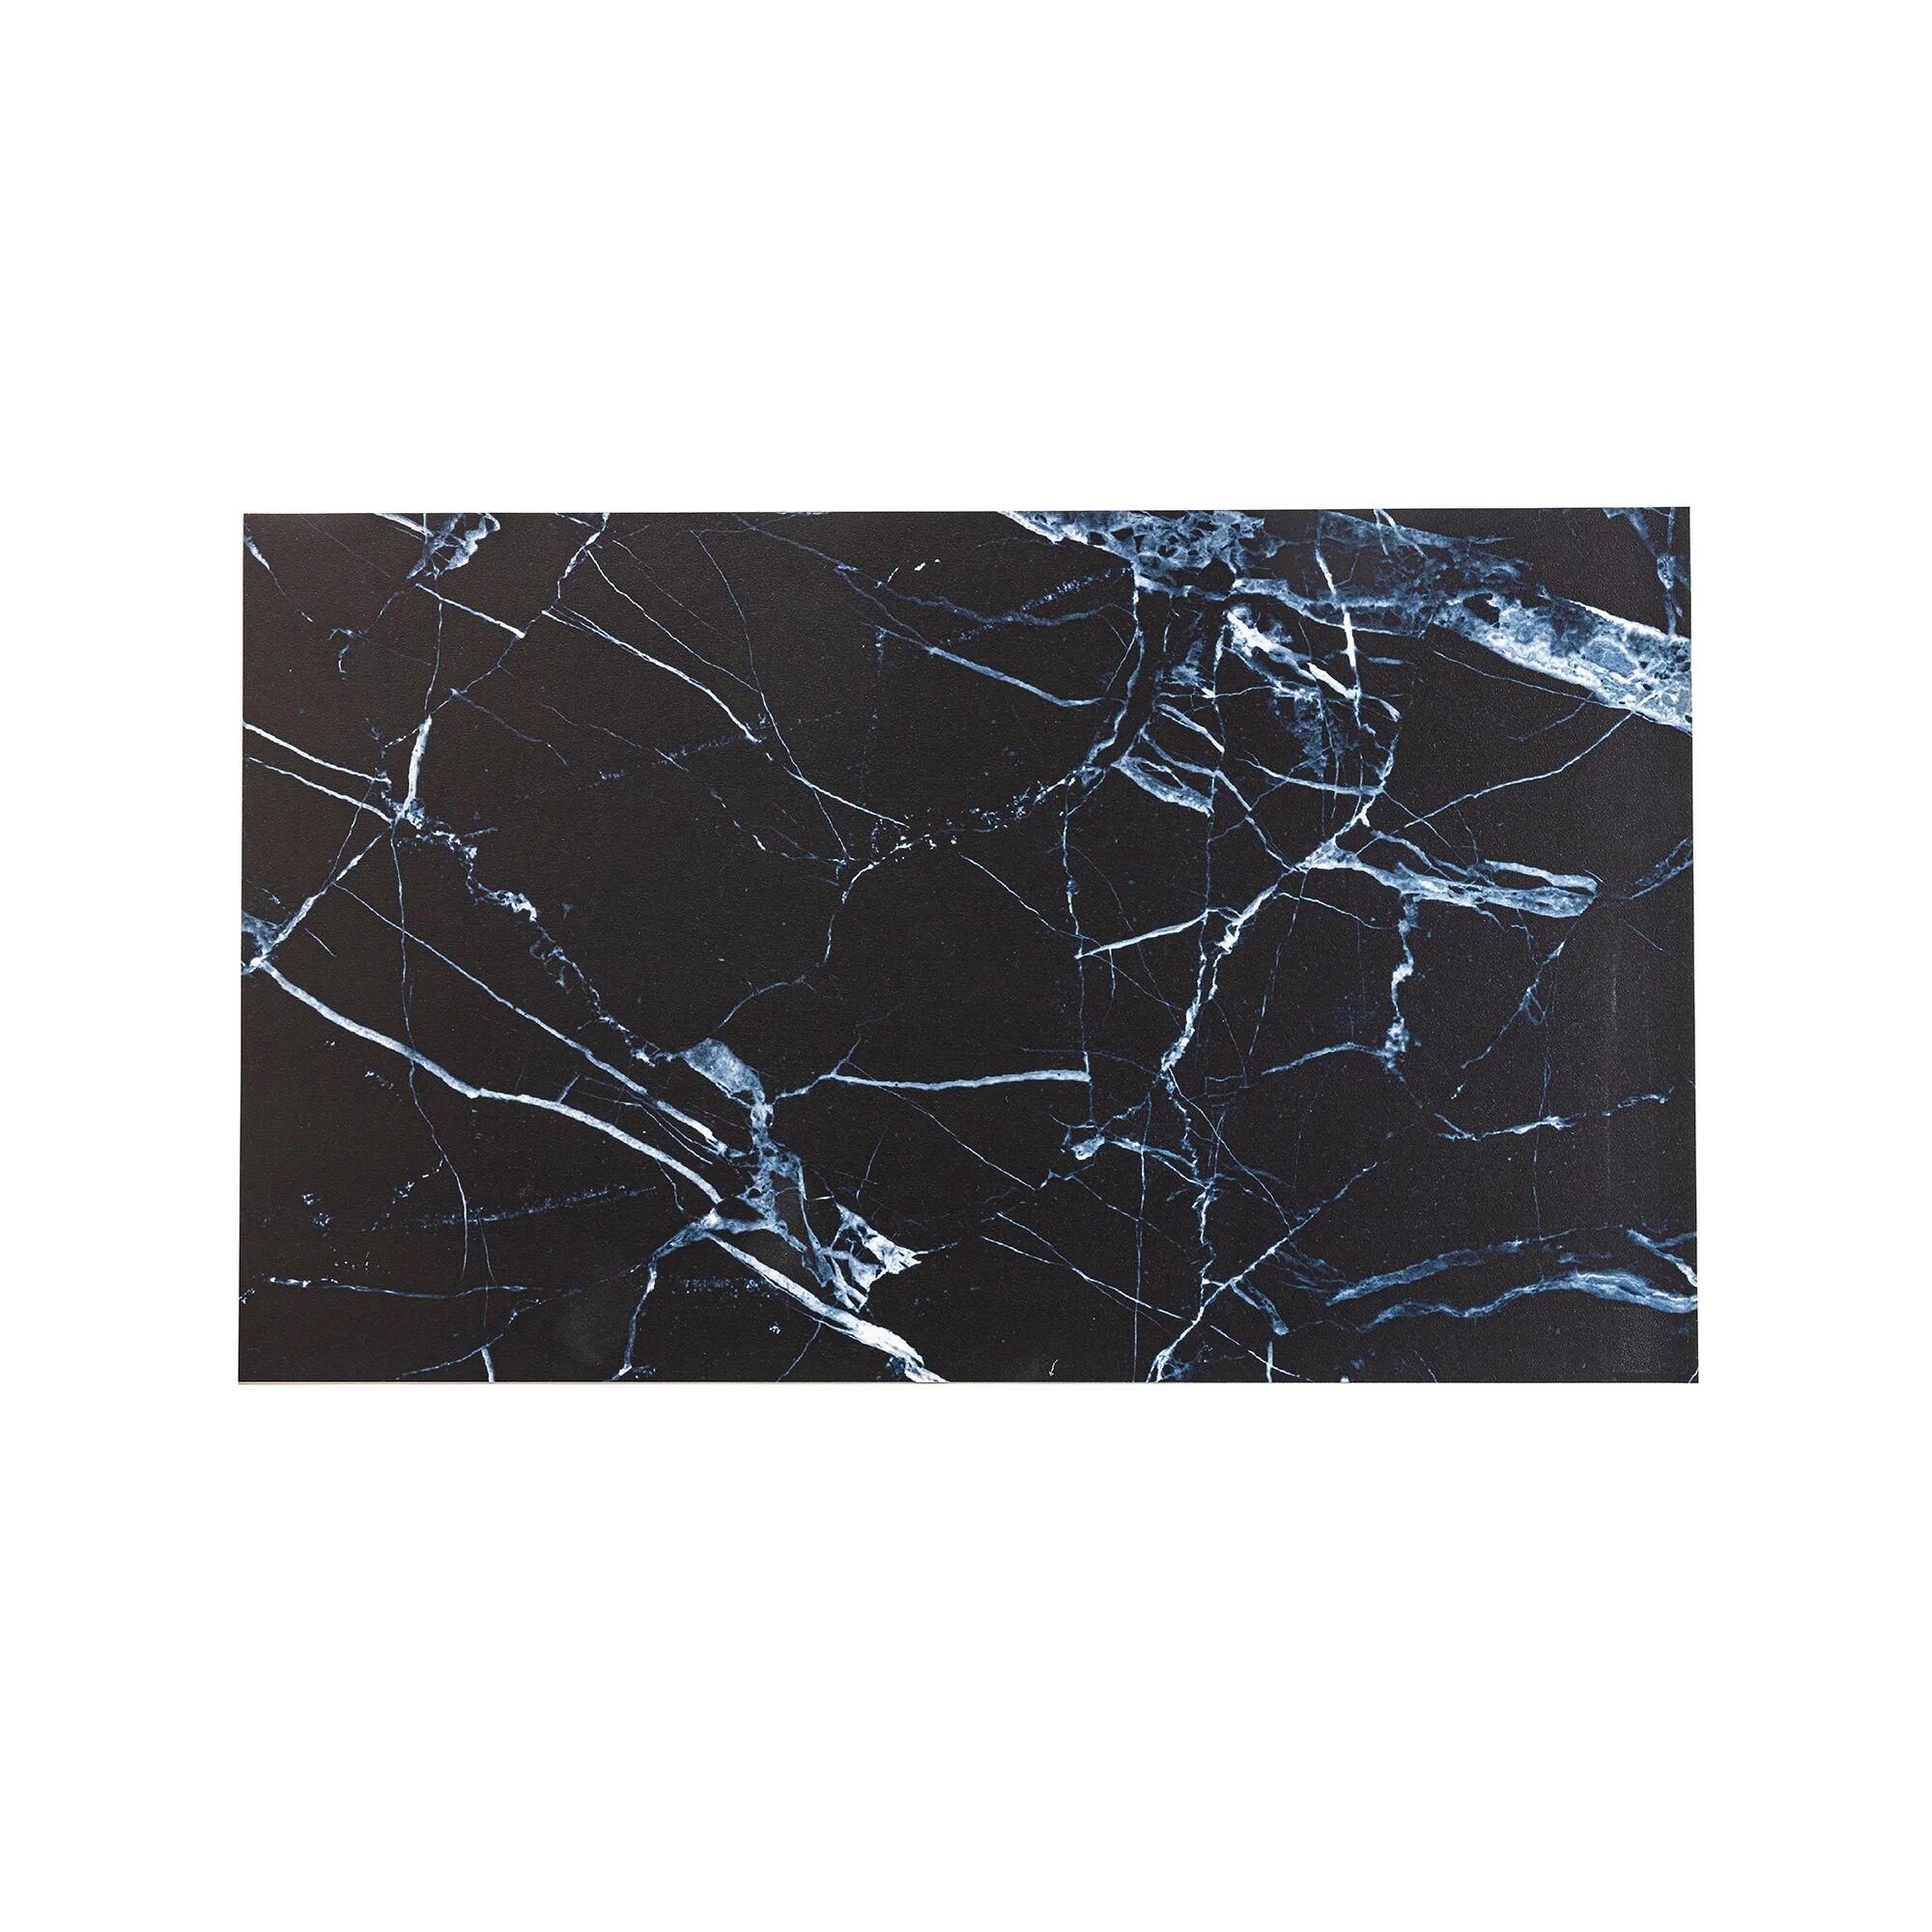 Tapis vinyle effet marbre noir - BlancheporteAjoutez une dimension chic et dans l'air du temps à votre intérieur avec ce tapis vinyle effet marbre noir. Facile d'entretien et anti-glisse, il s'adapte à toutes les pièces de la maison, et notamment à votre 